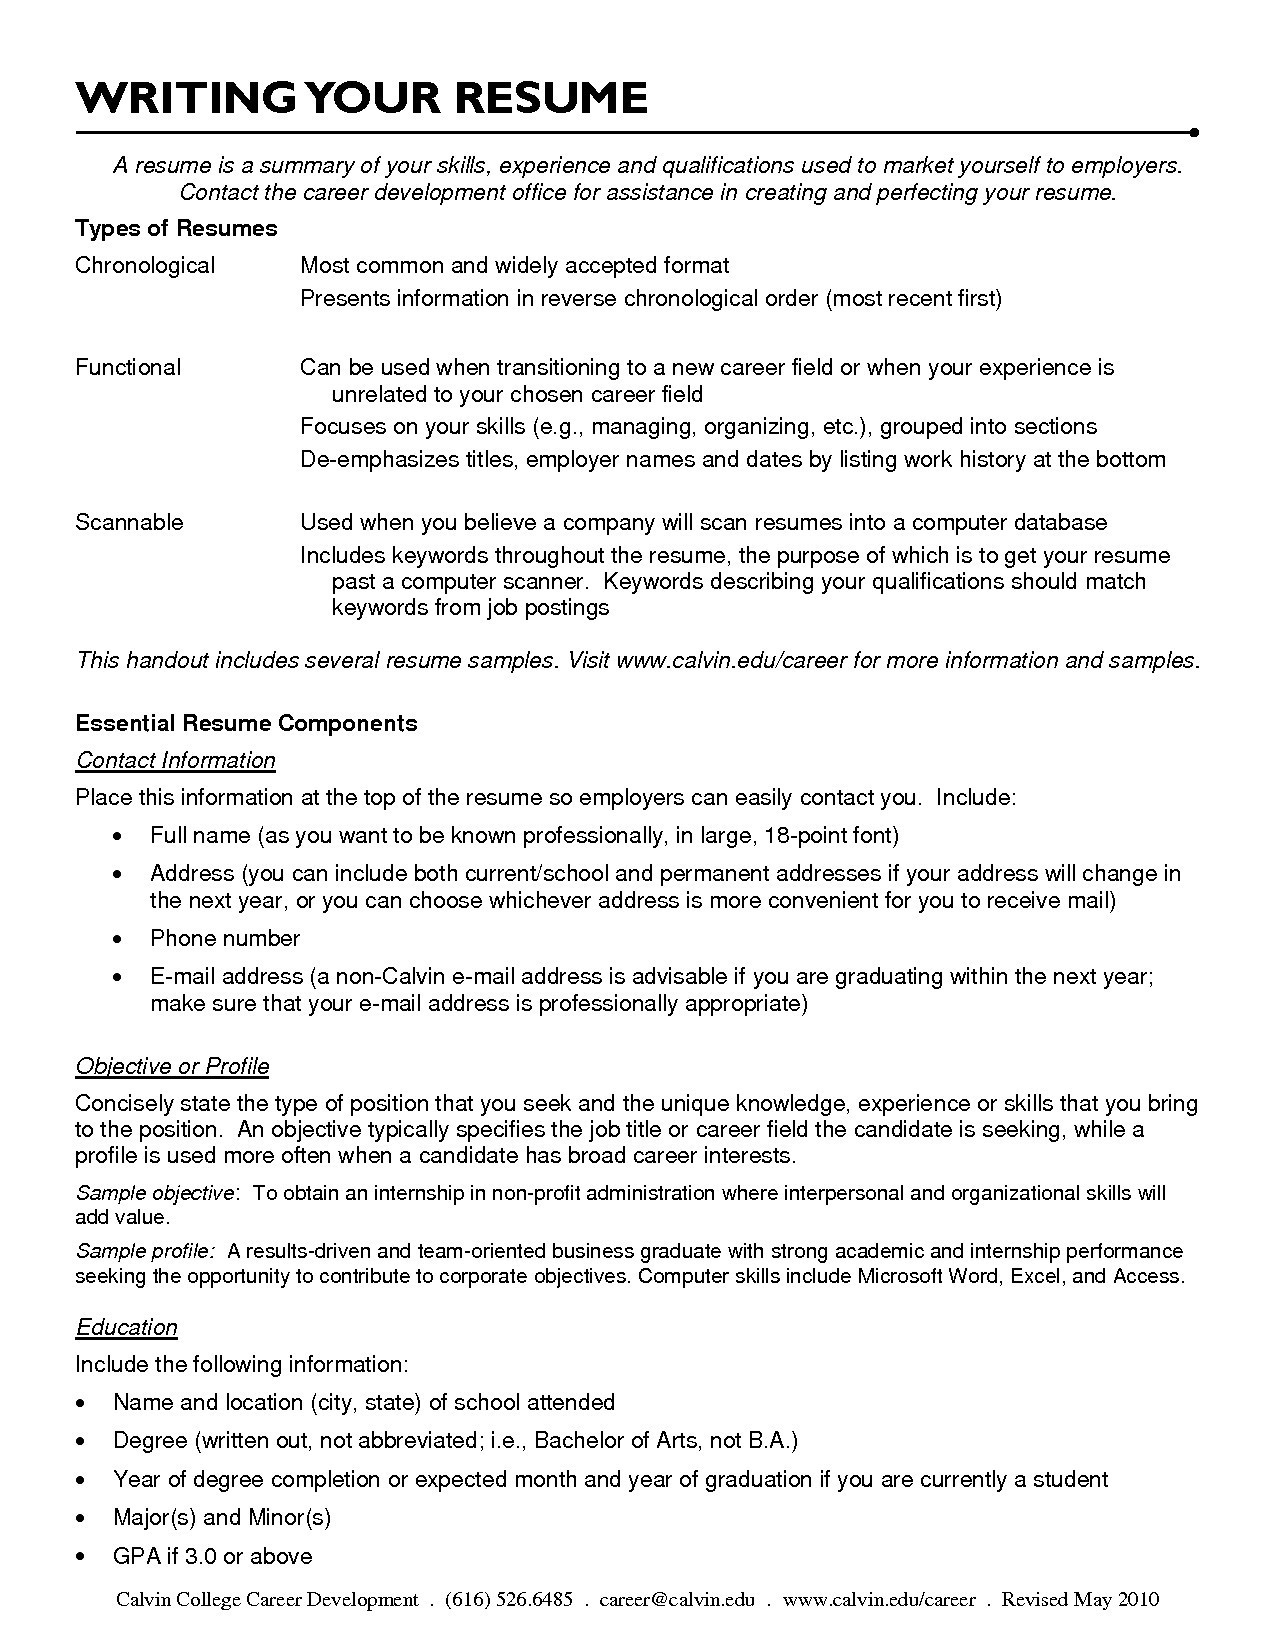 Career Change Resume Functional Resume Sample For Career Change New Resumes For Teachers